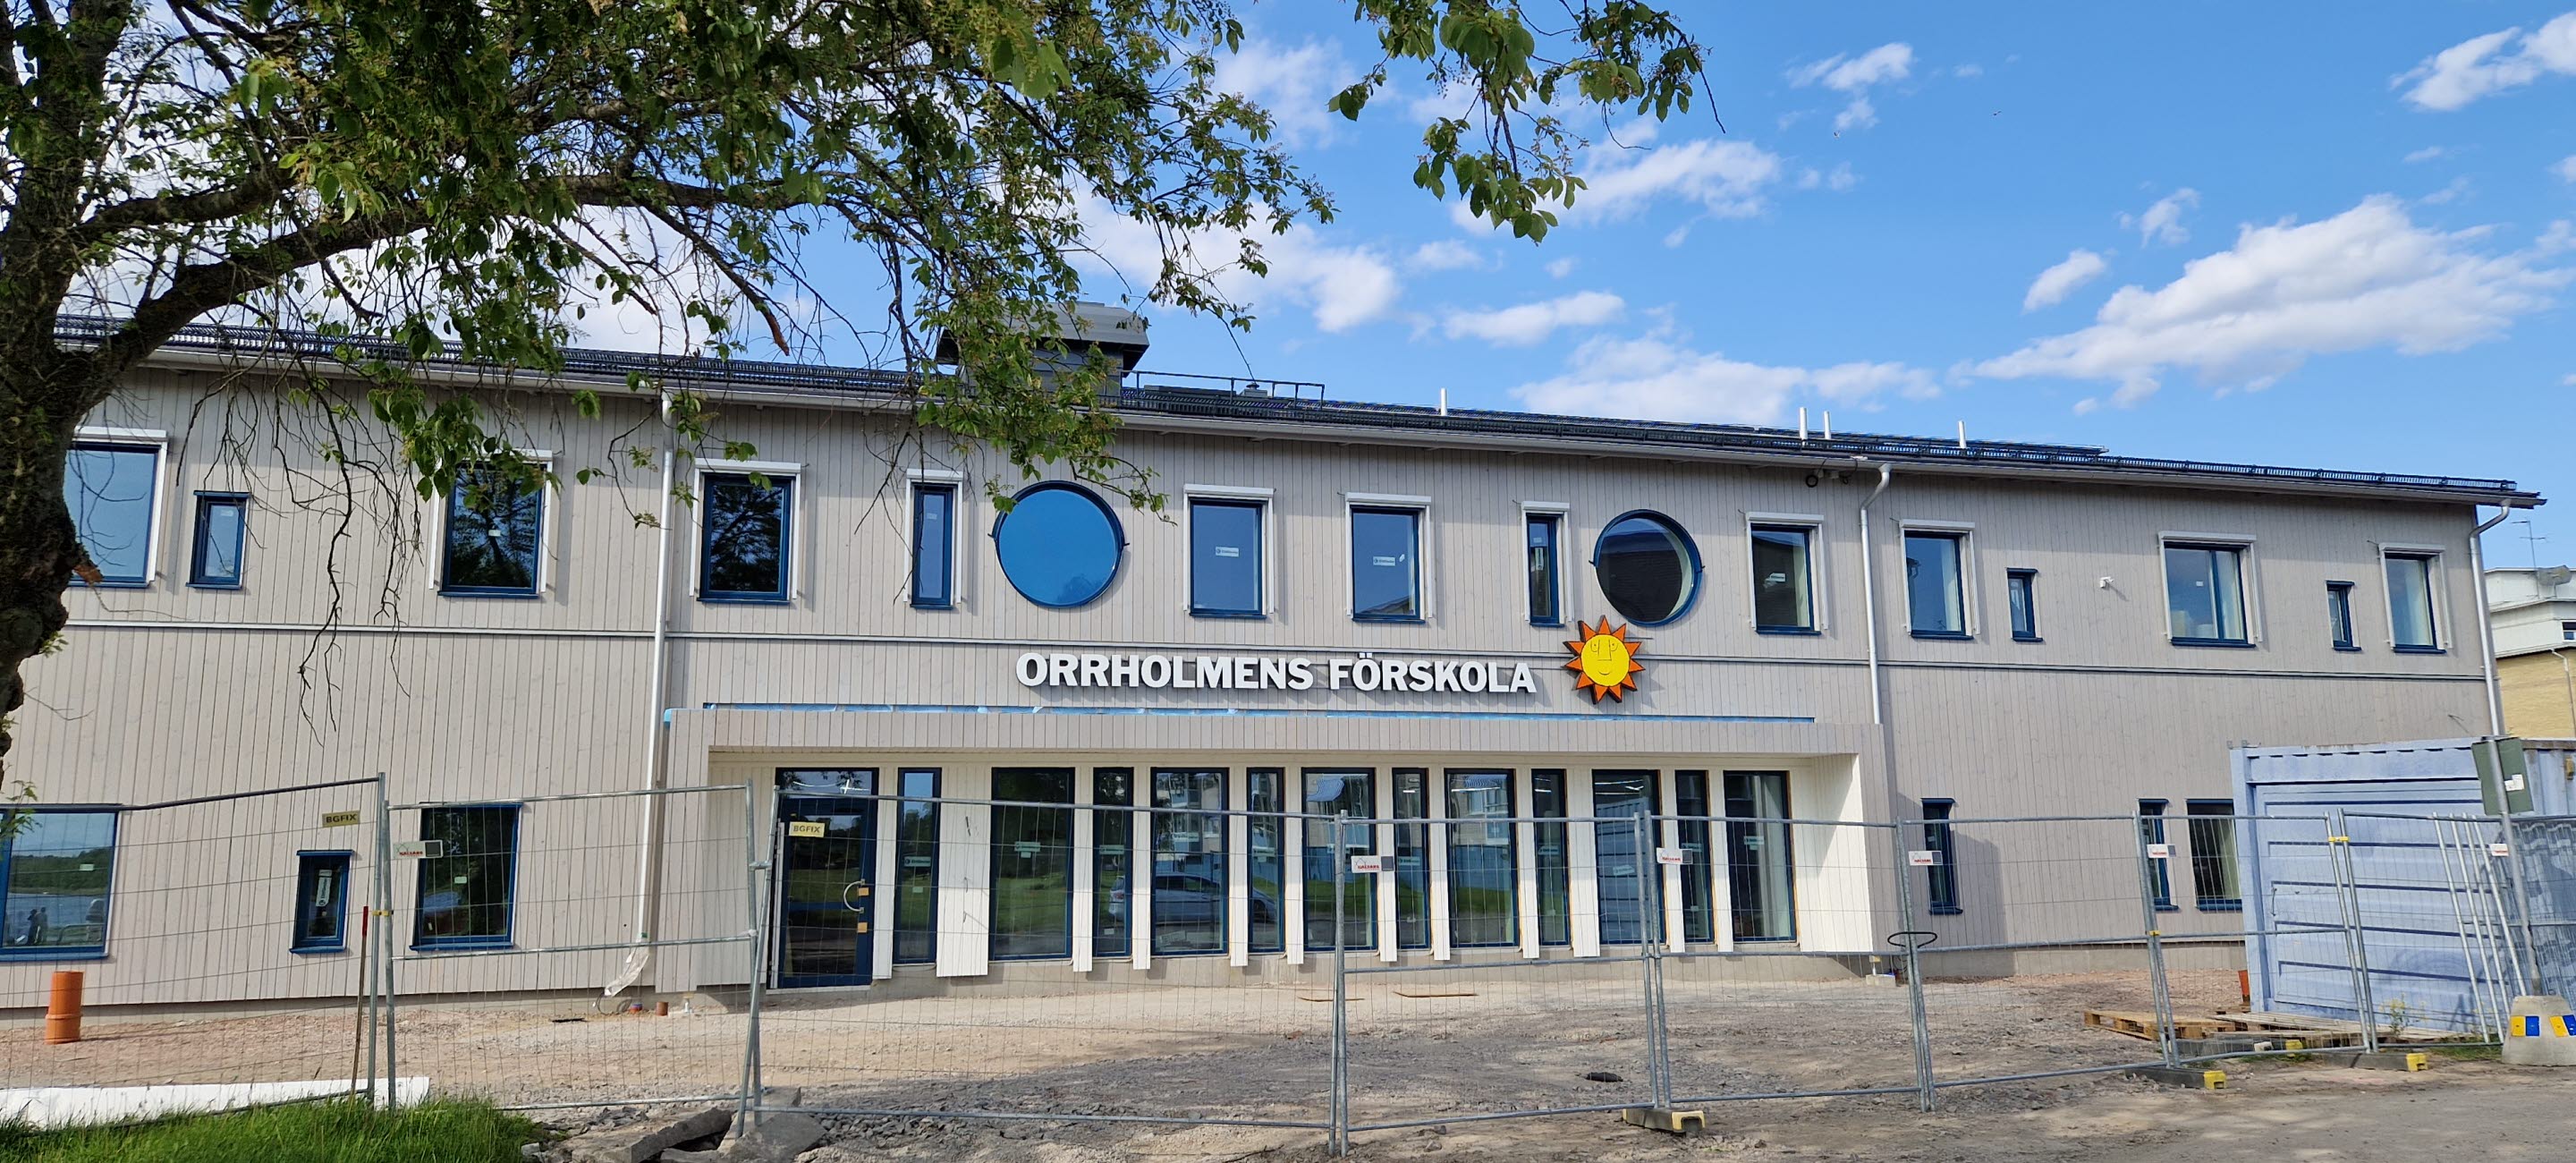 Orrholmens förskola snart färdigbyggd